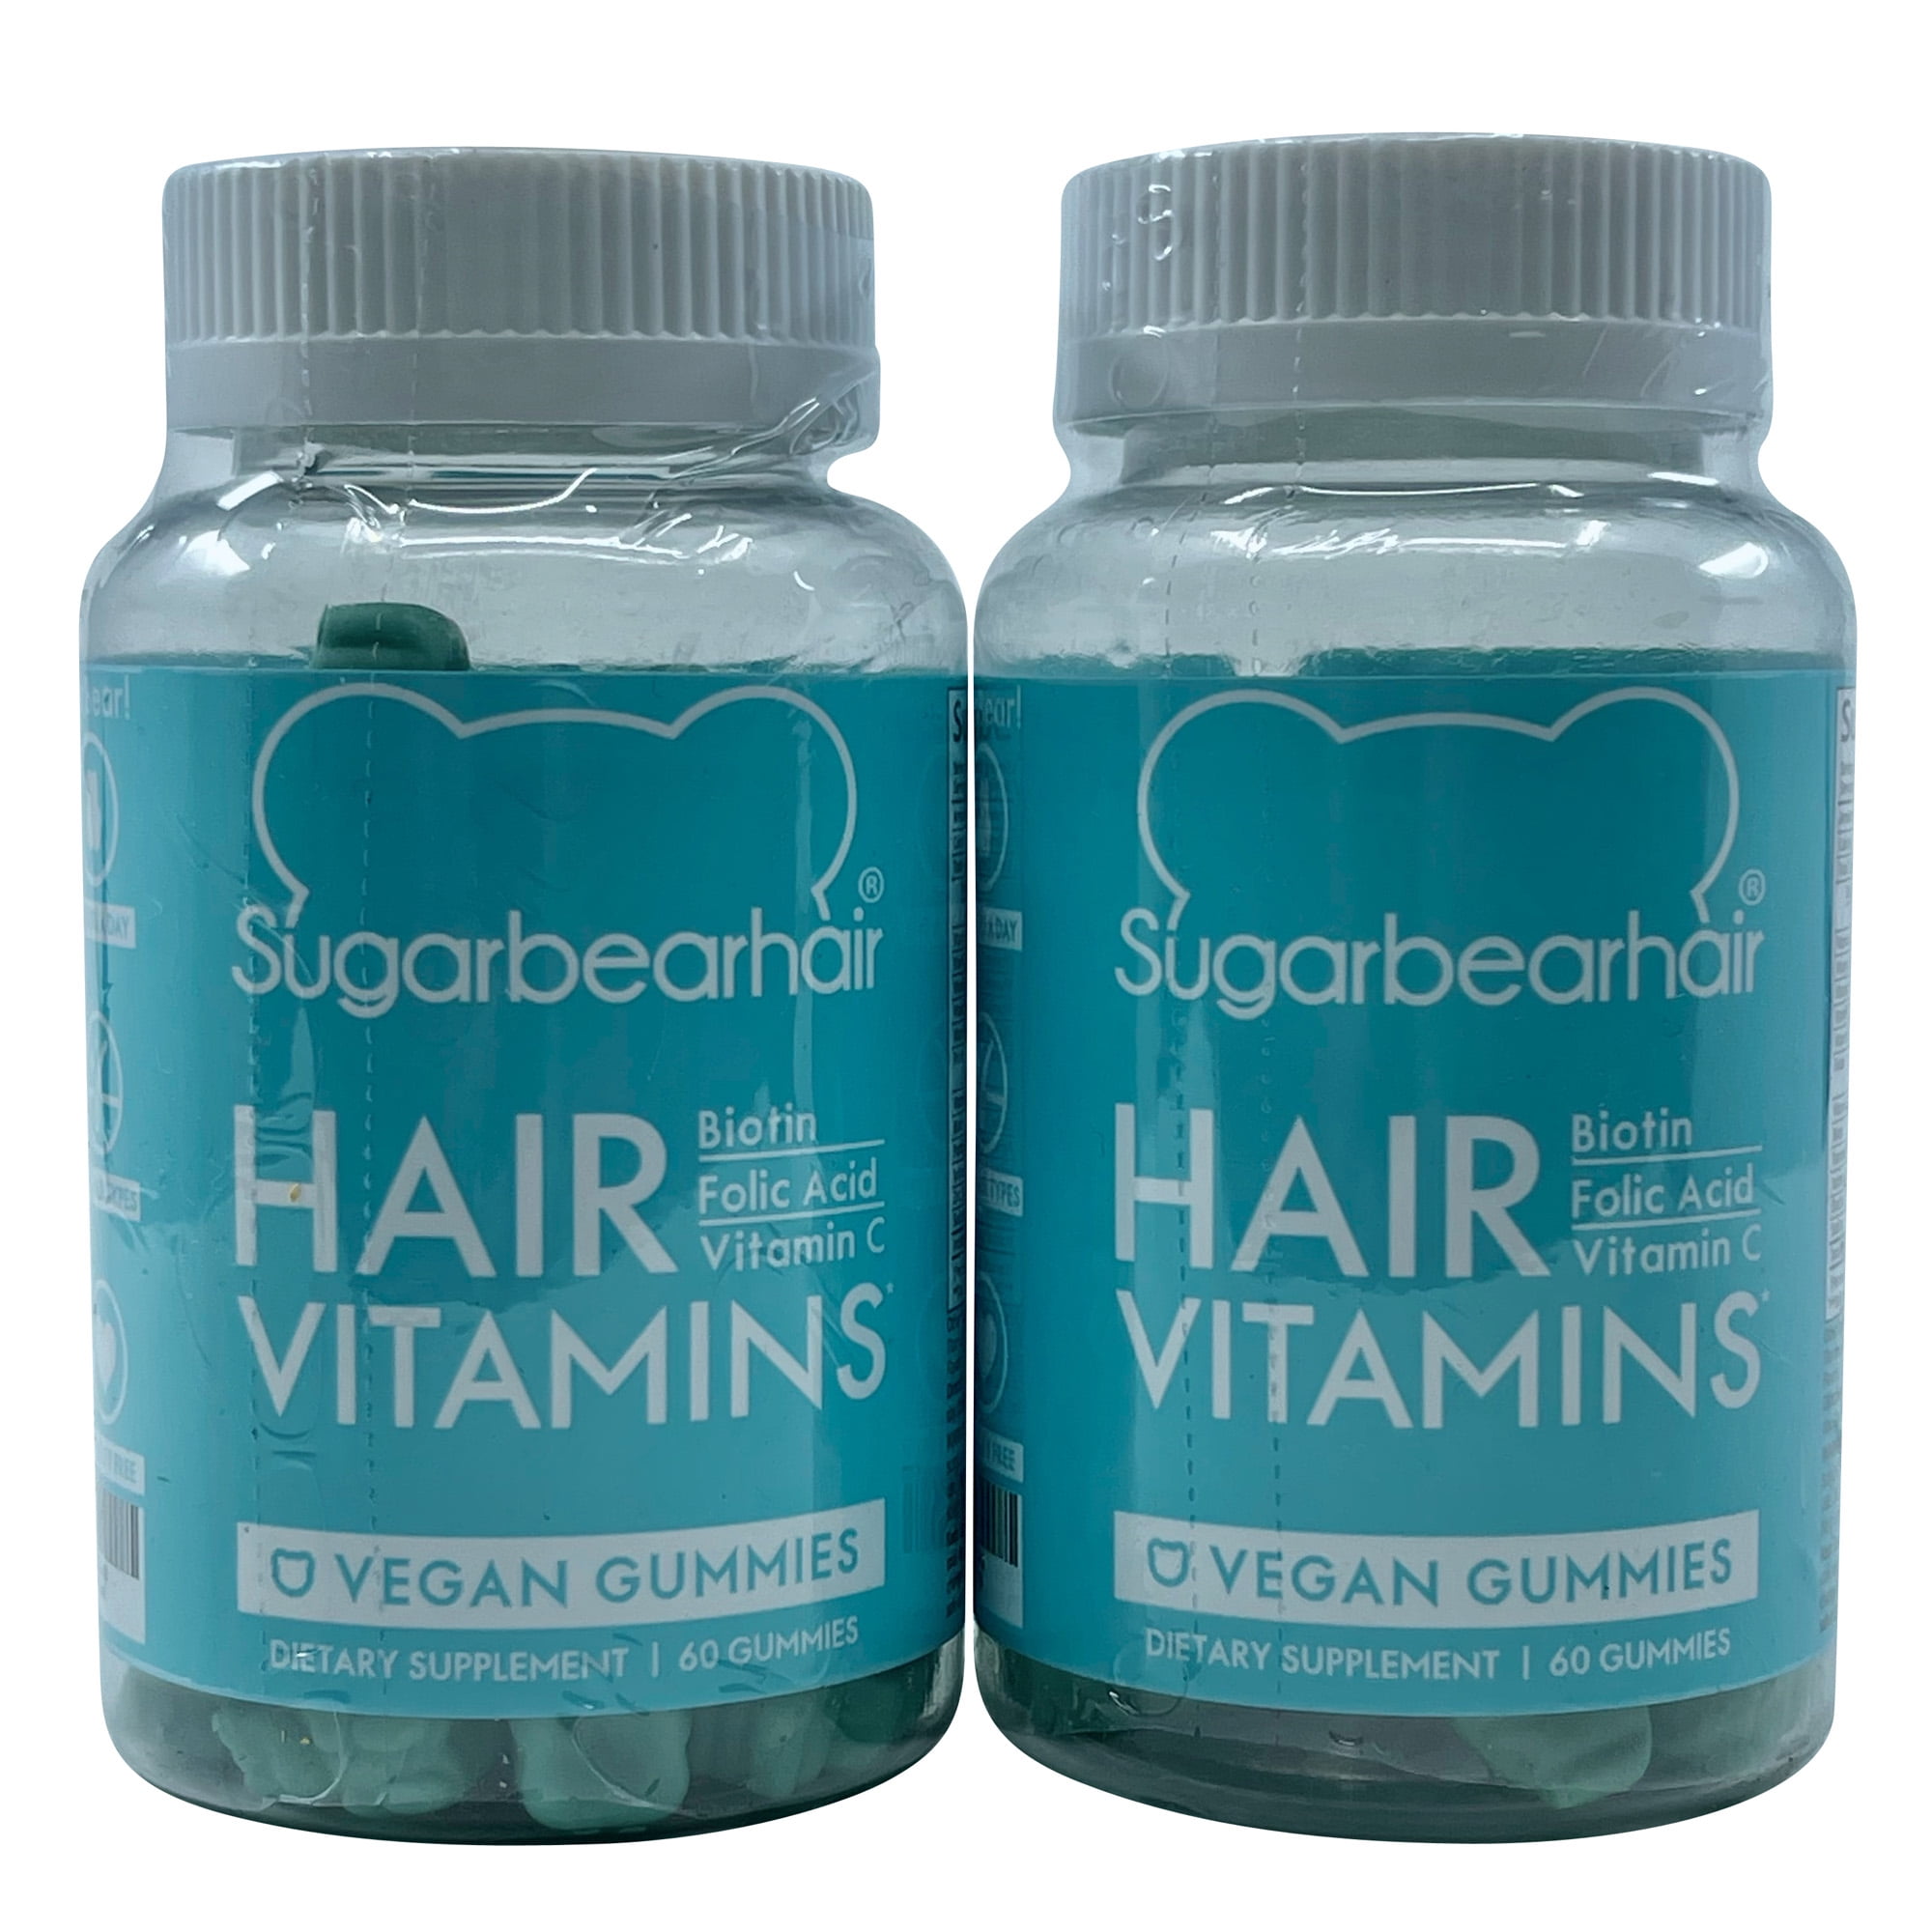 Sugarbearhair Hair Vitamins Vegan Gummies 60 Gummies Set of 2 